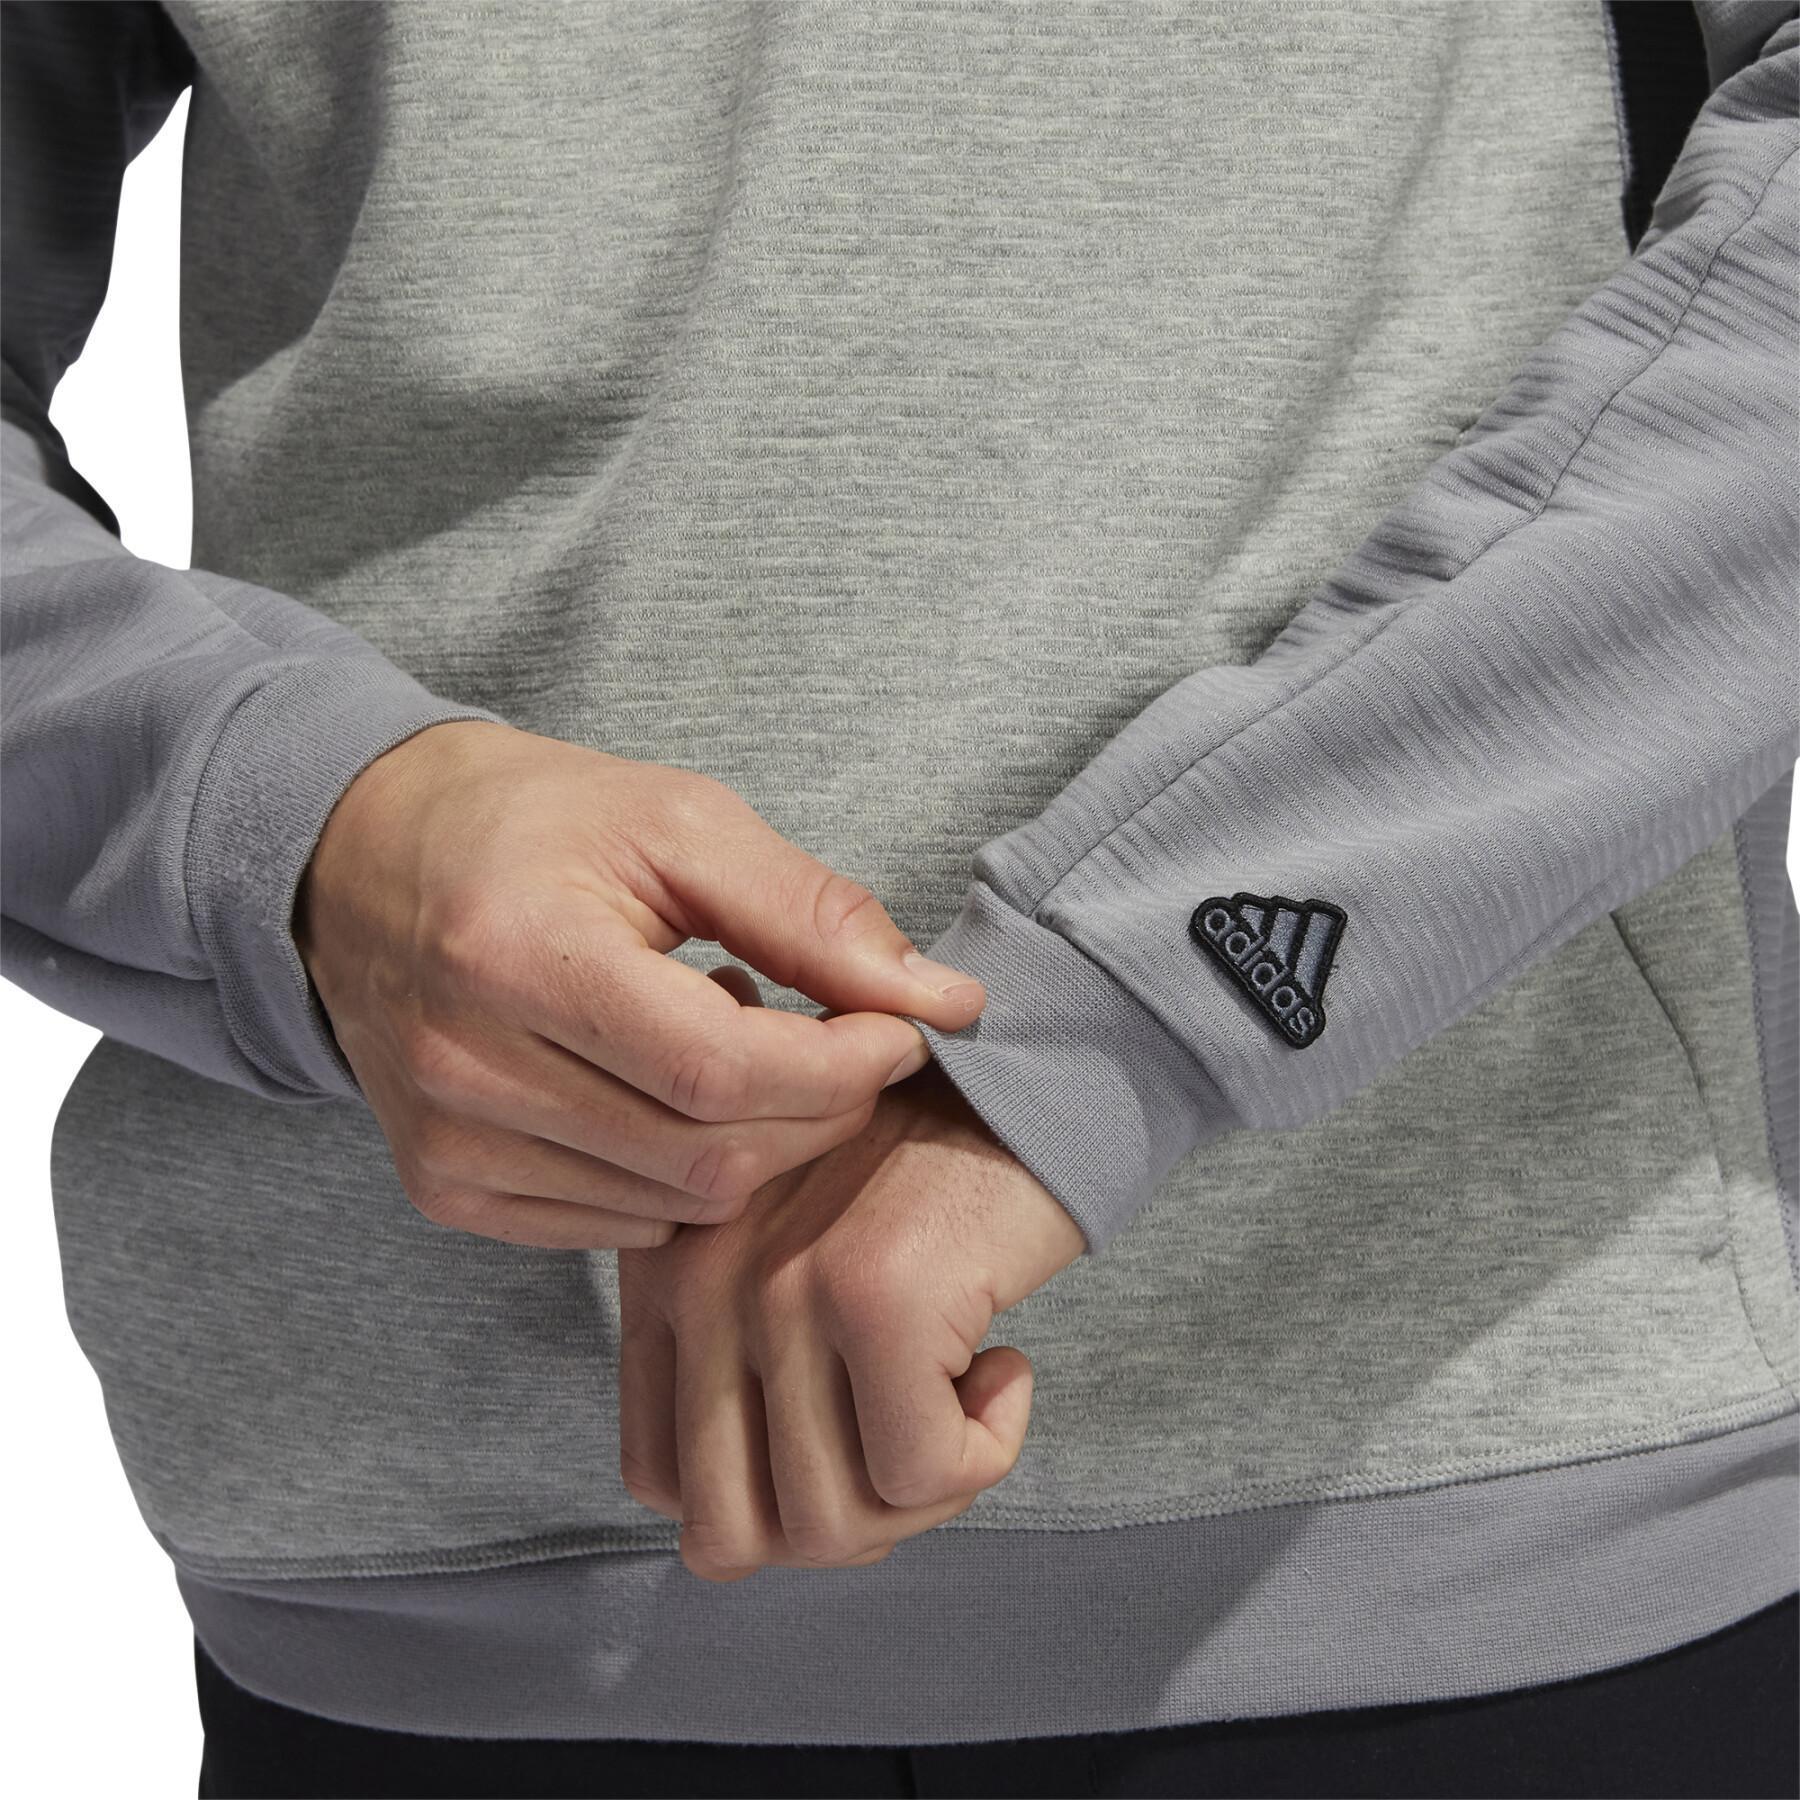 Sweatshirt mit Kapuze adidas Go-To Primegreen